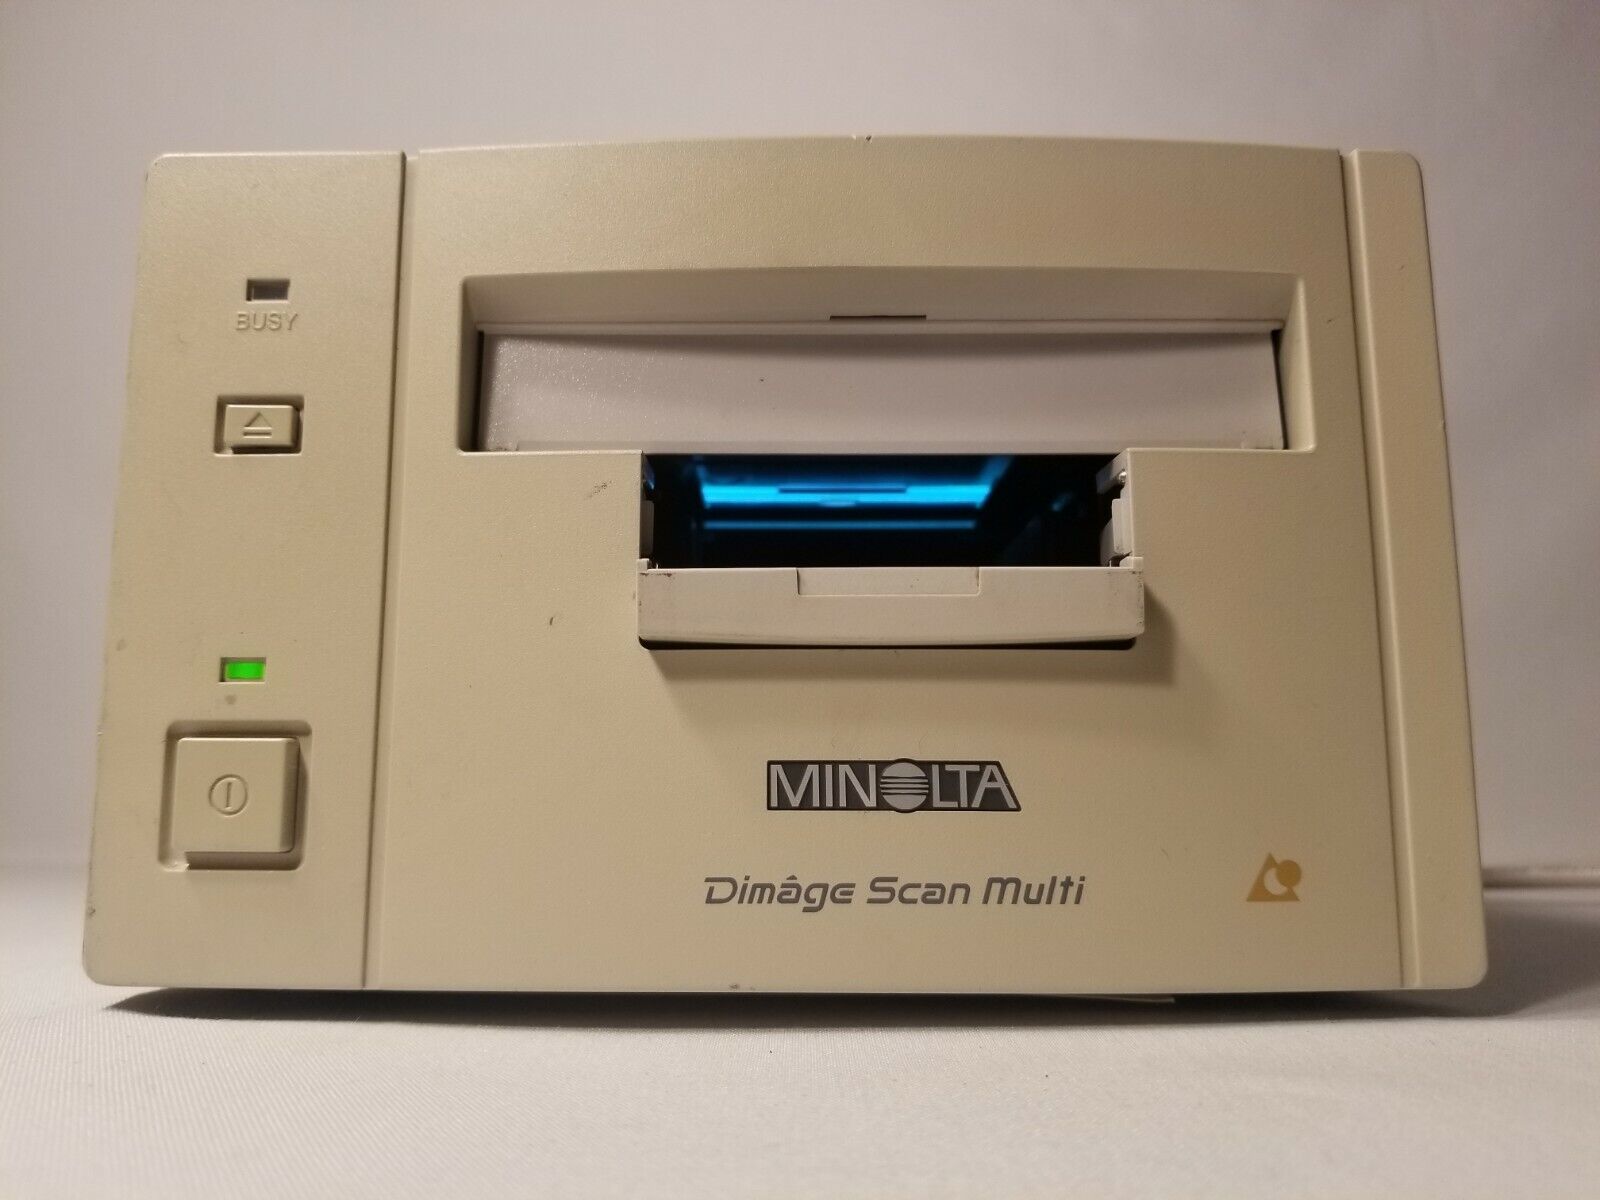 Minolta Dimage Scan Multi F 3000 Japan 120 Negative Slide Filmscanner Descrption